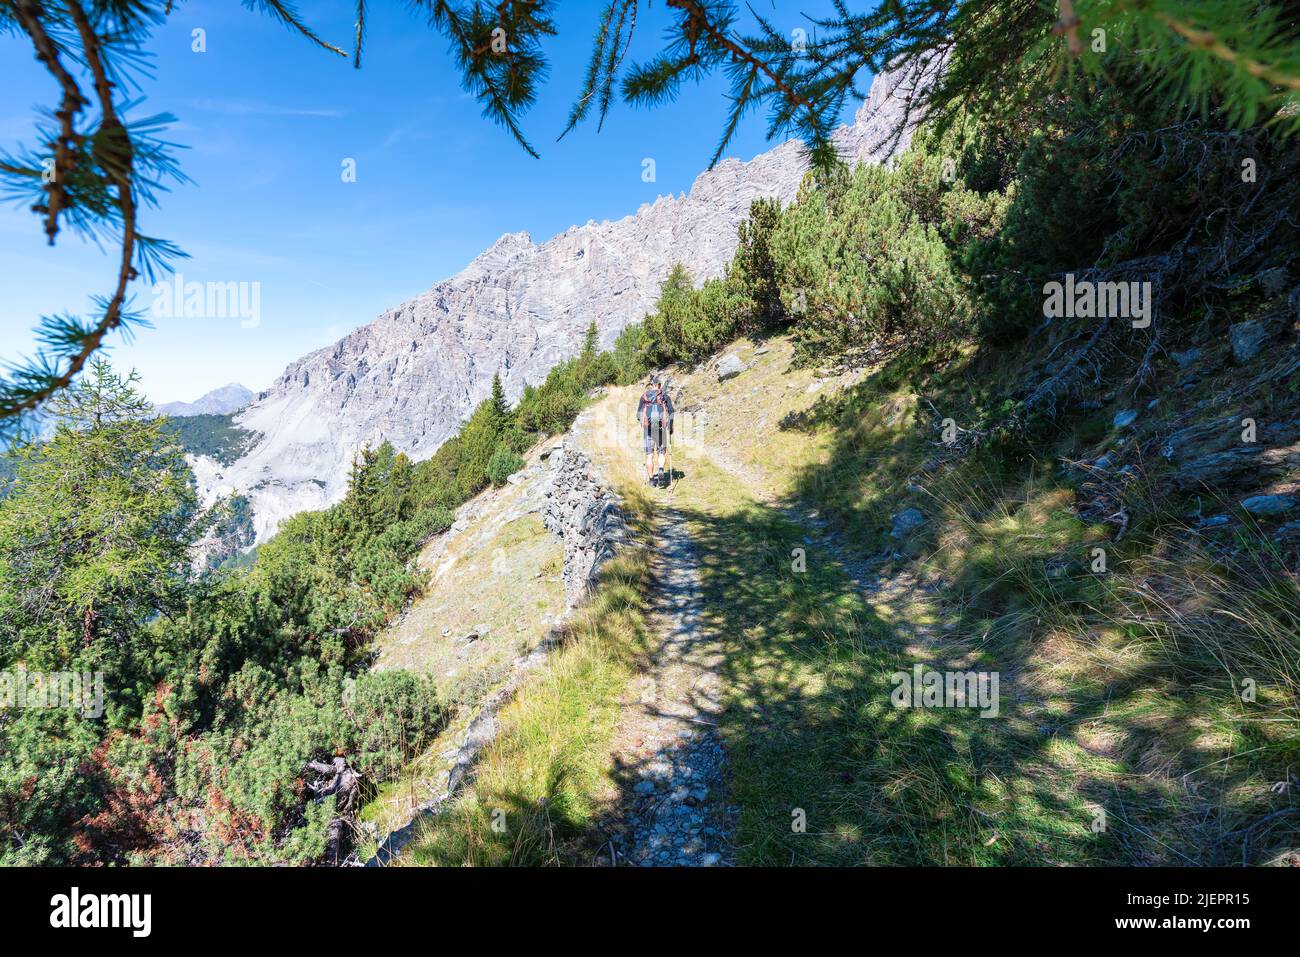 Hiking near Bormio city in Northern Italy, Europe, Alps Stock Photo